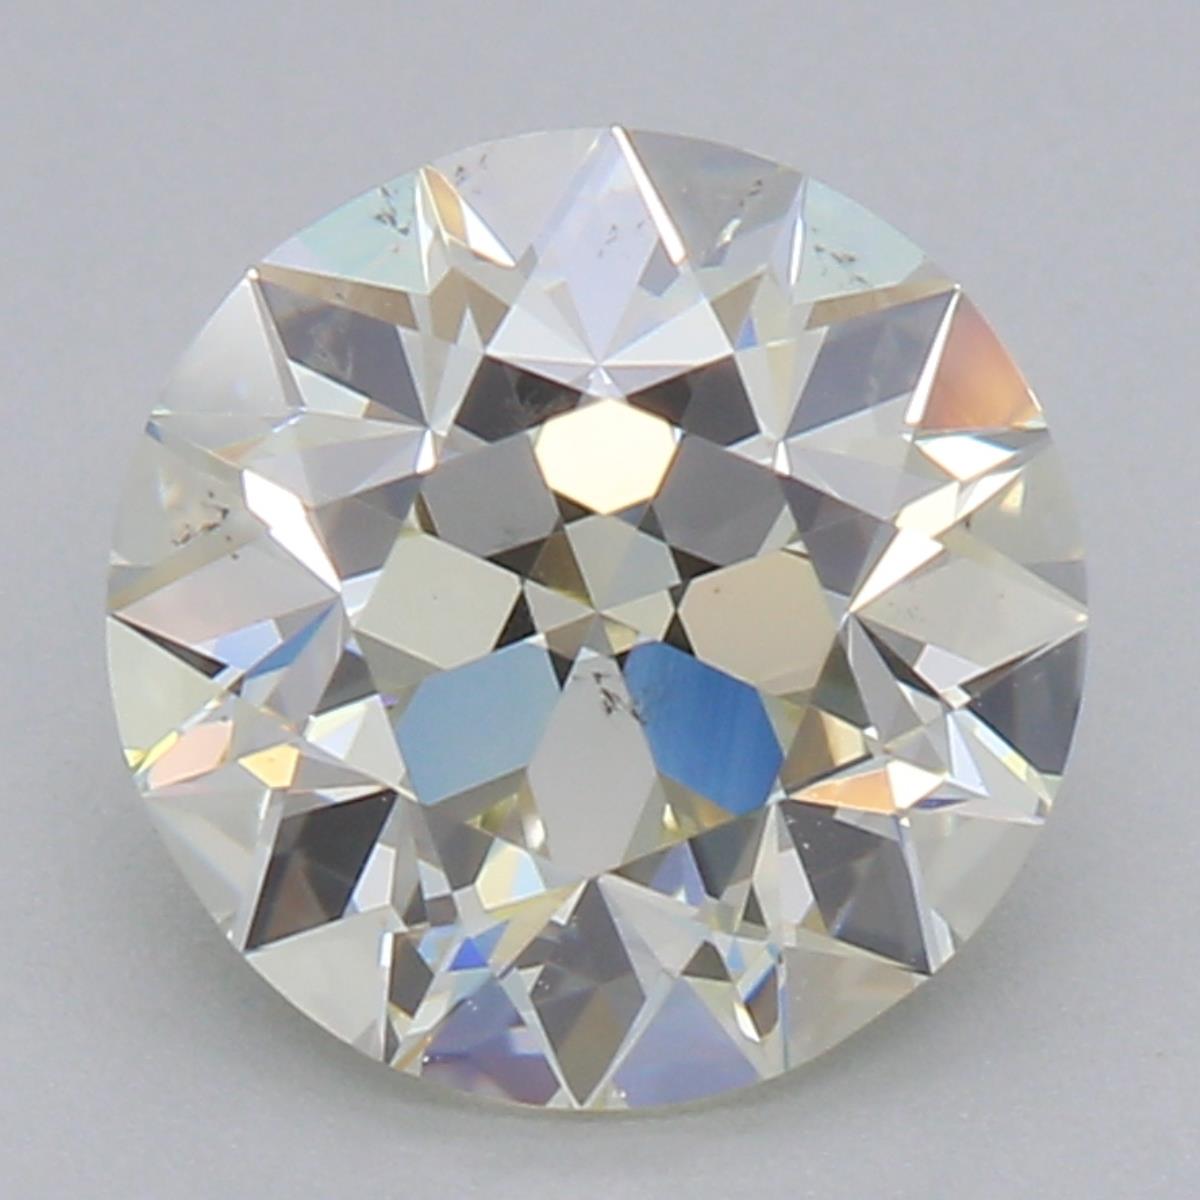 Ken & Dana Emma Antique Inspired European Cut Diamond